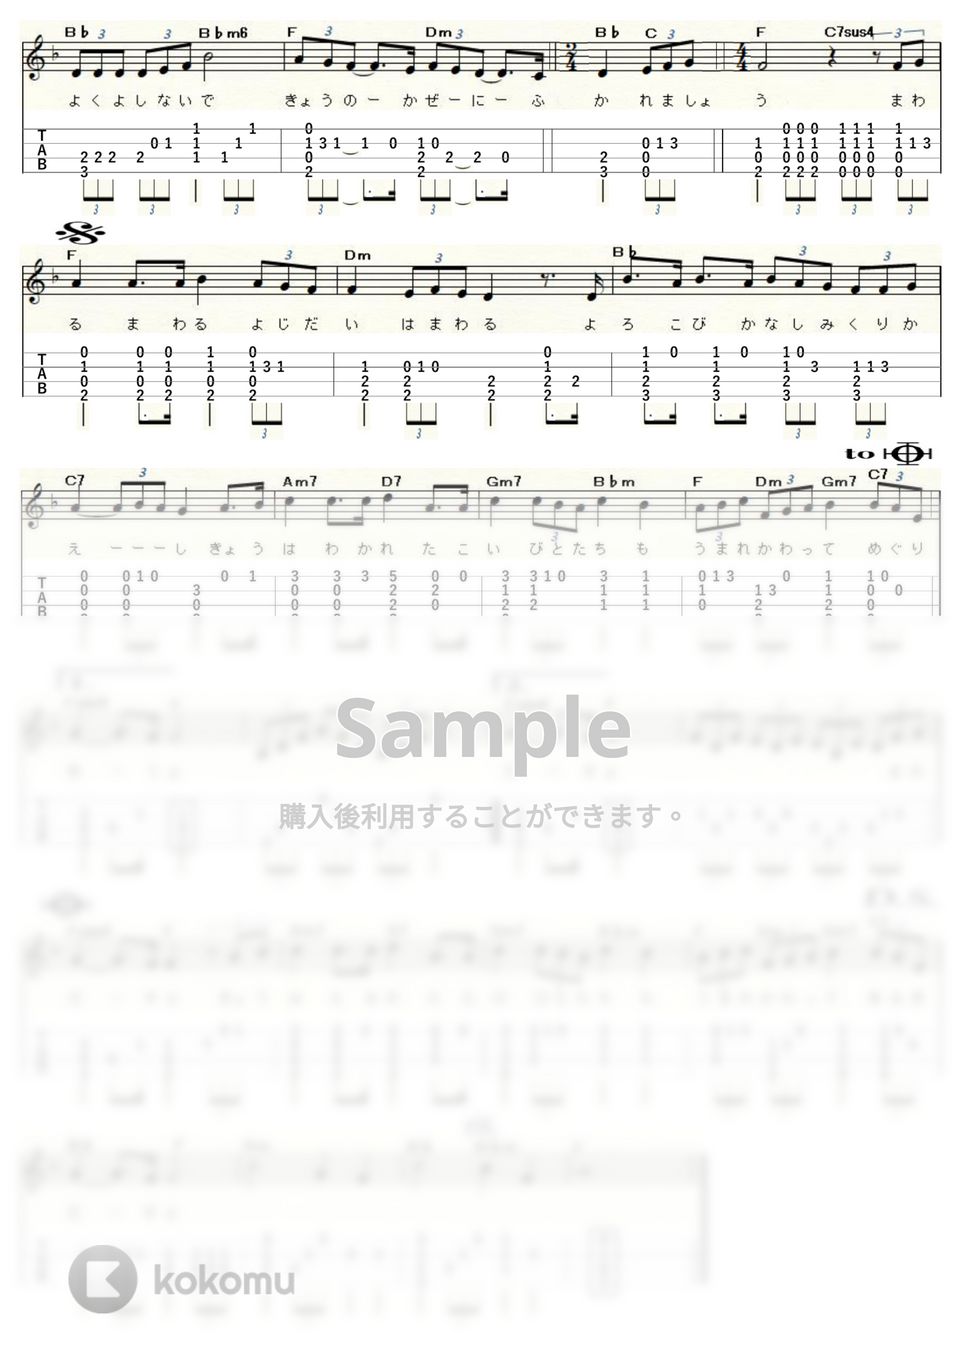 中島みゆき - 時代 (ｳｸﾚﾚｿﾛ / Low-G / 中級～上級) by ukulelepapa